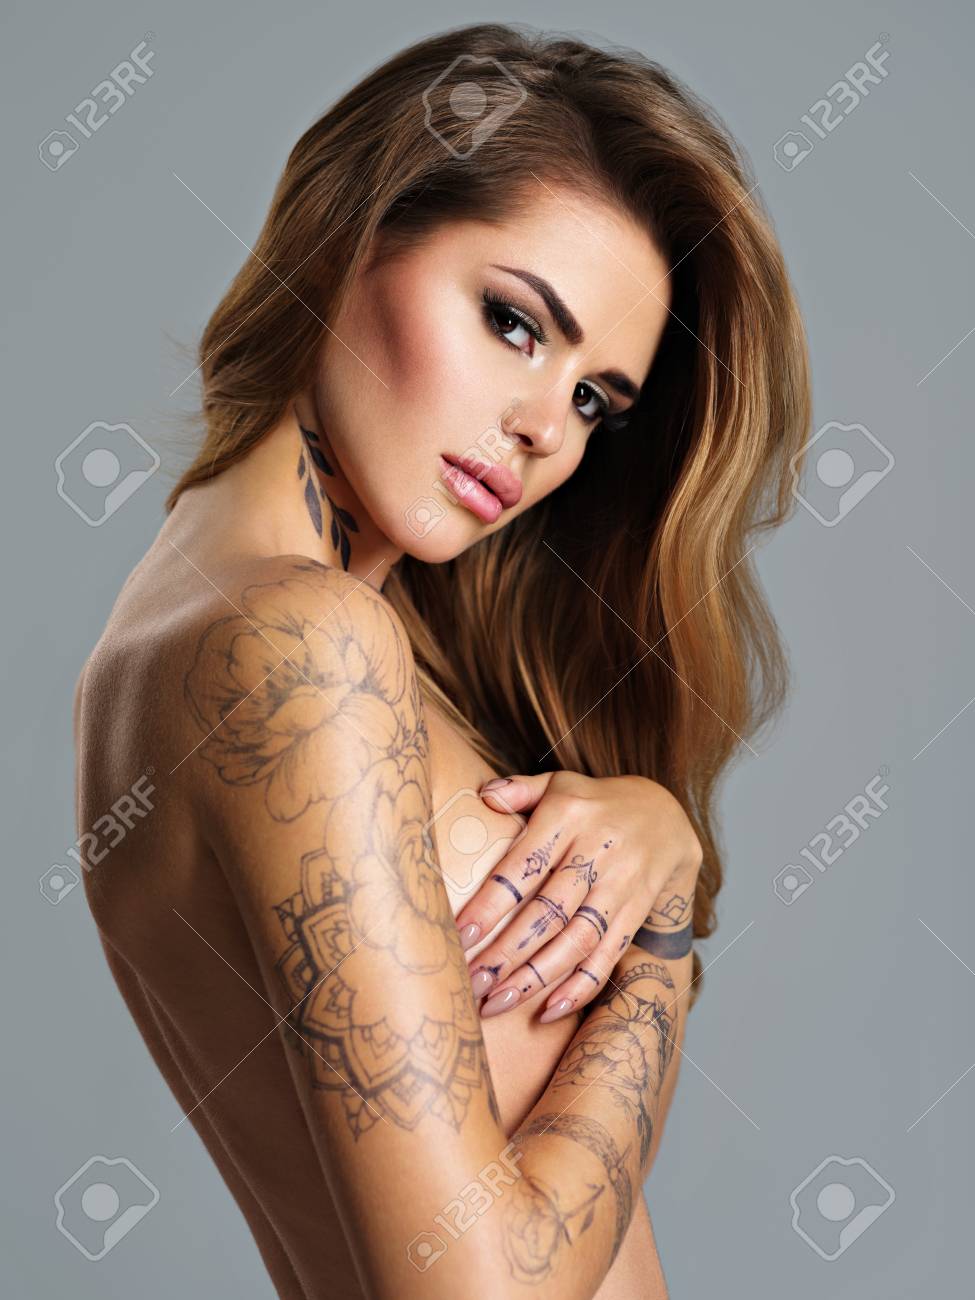 Tattoo nude girl full body beautiful